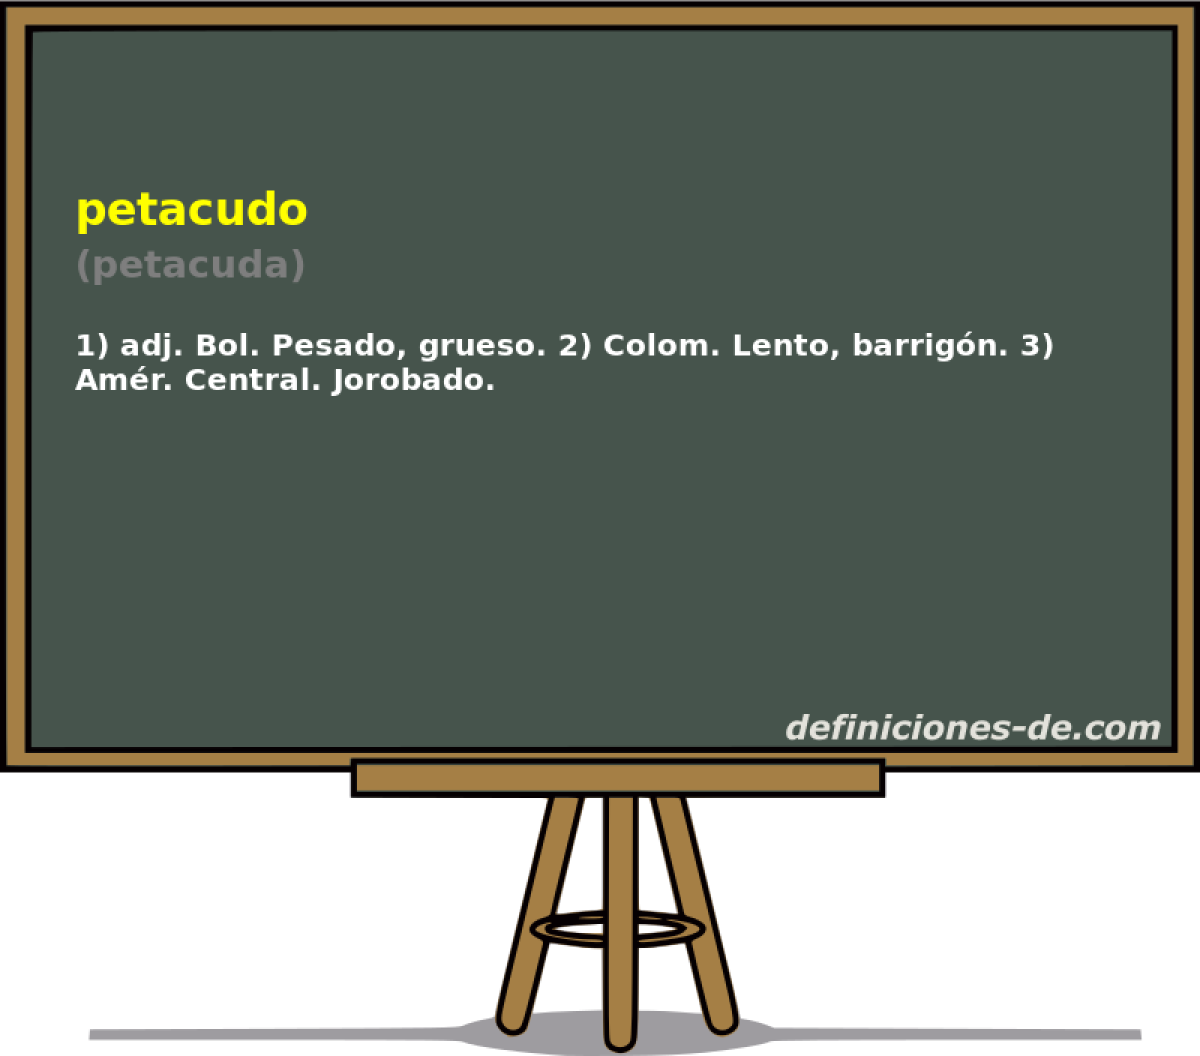 petacudo (petacuda)